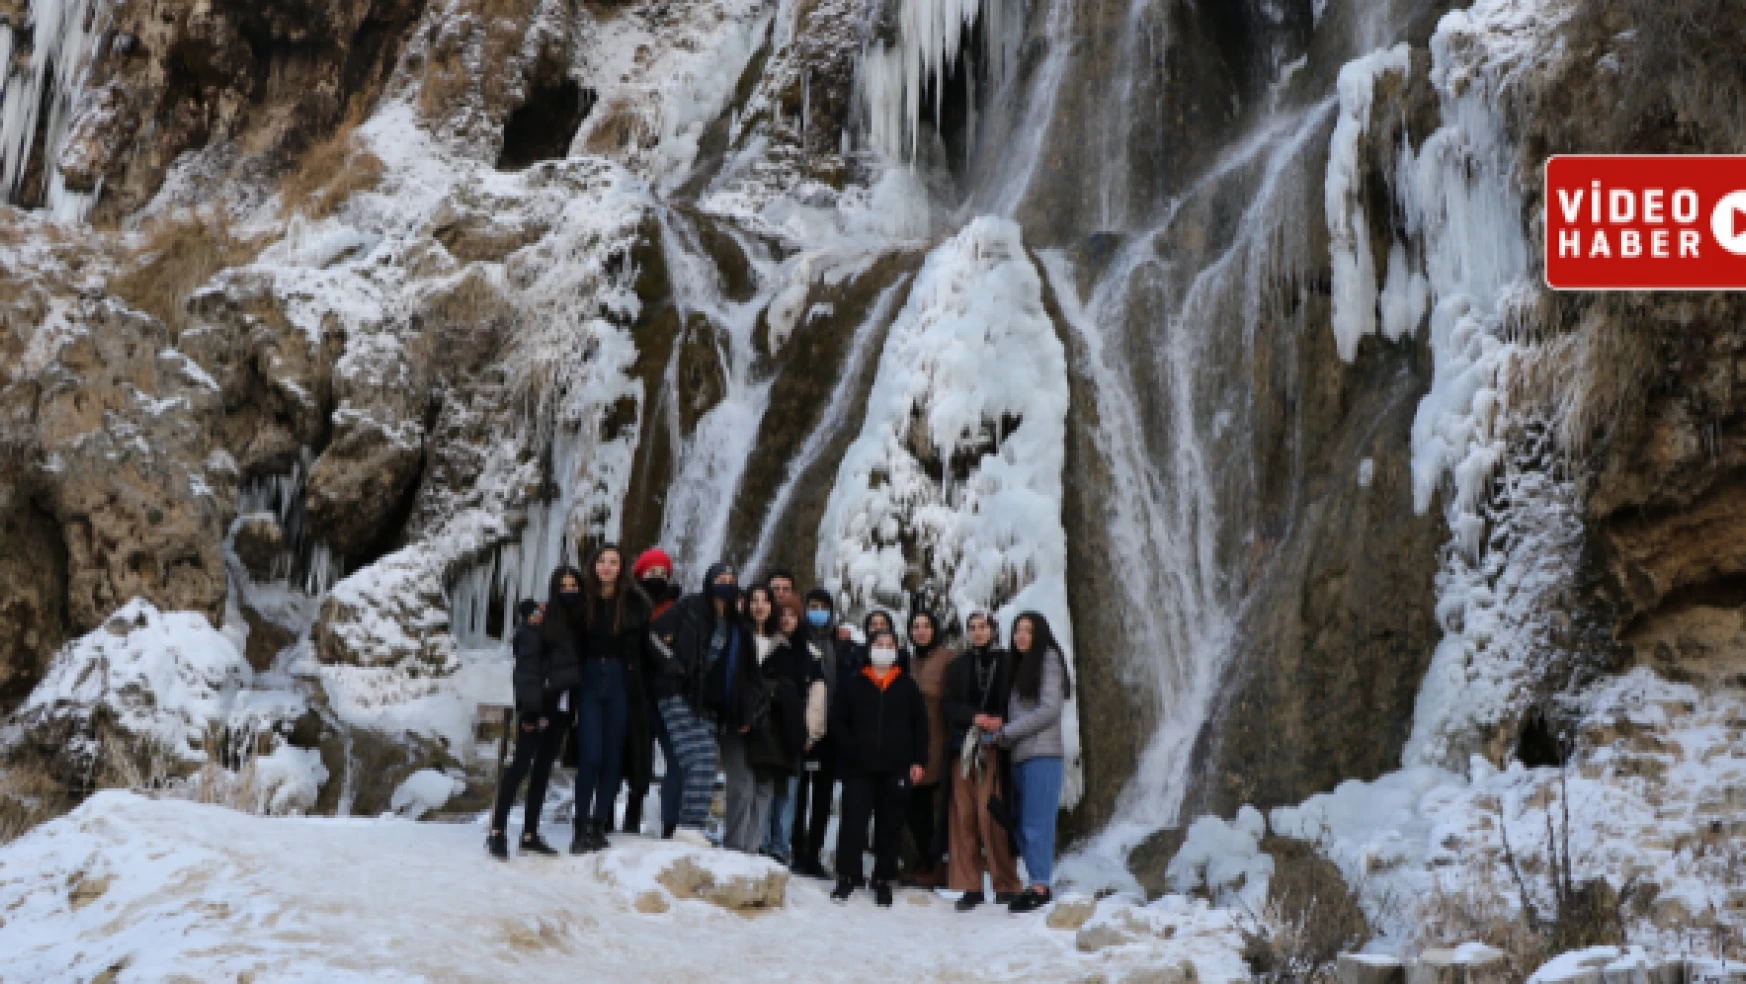 Erzincan Girlevik Şelalesi'ndeki buz sarkıtları ilgi odağı oldu